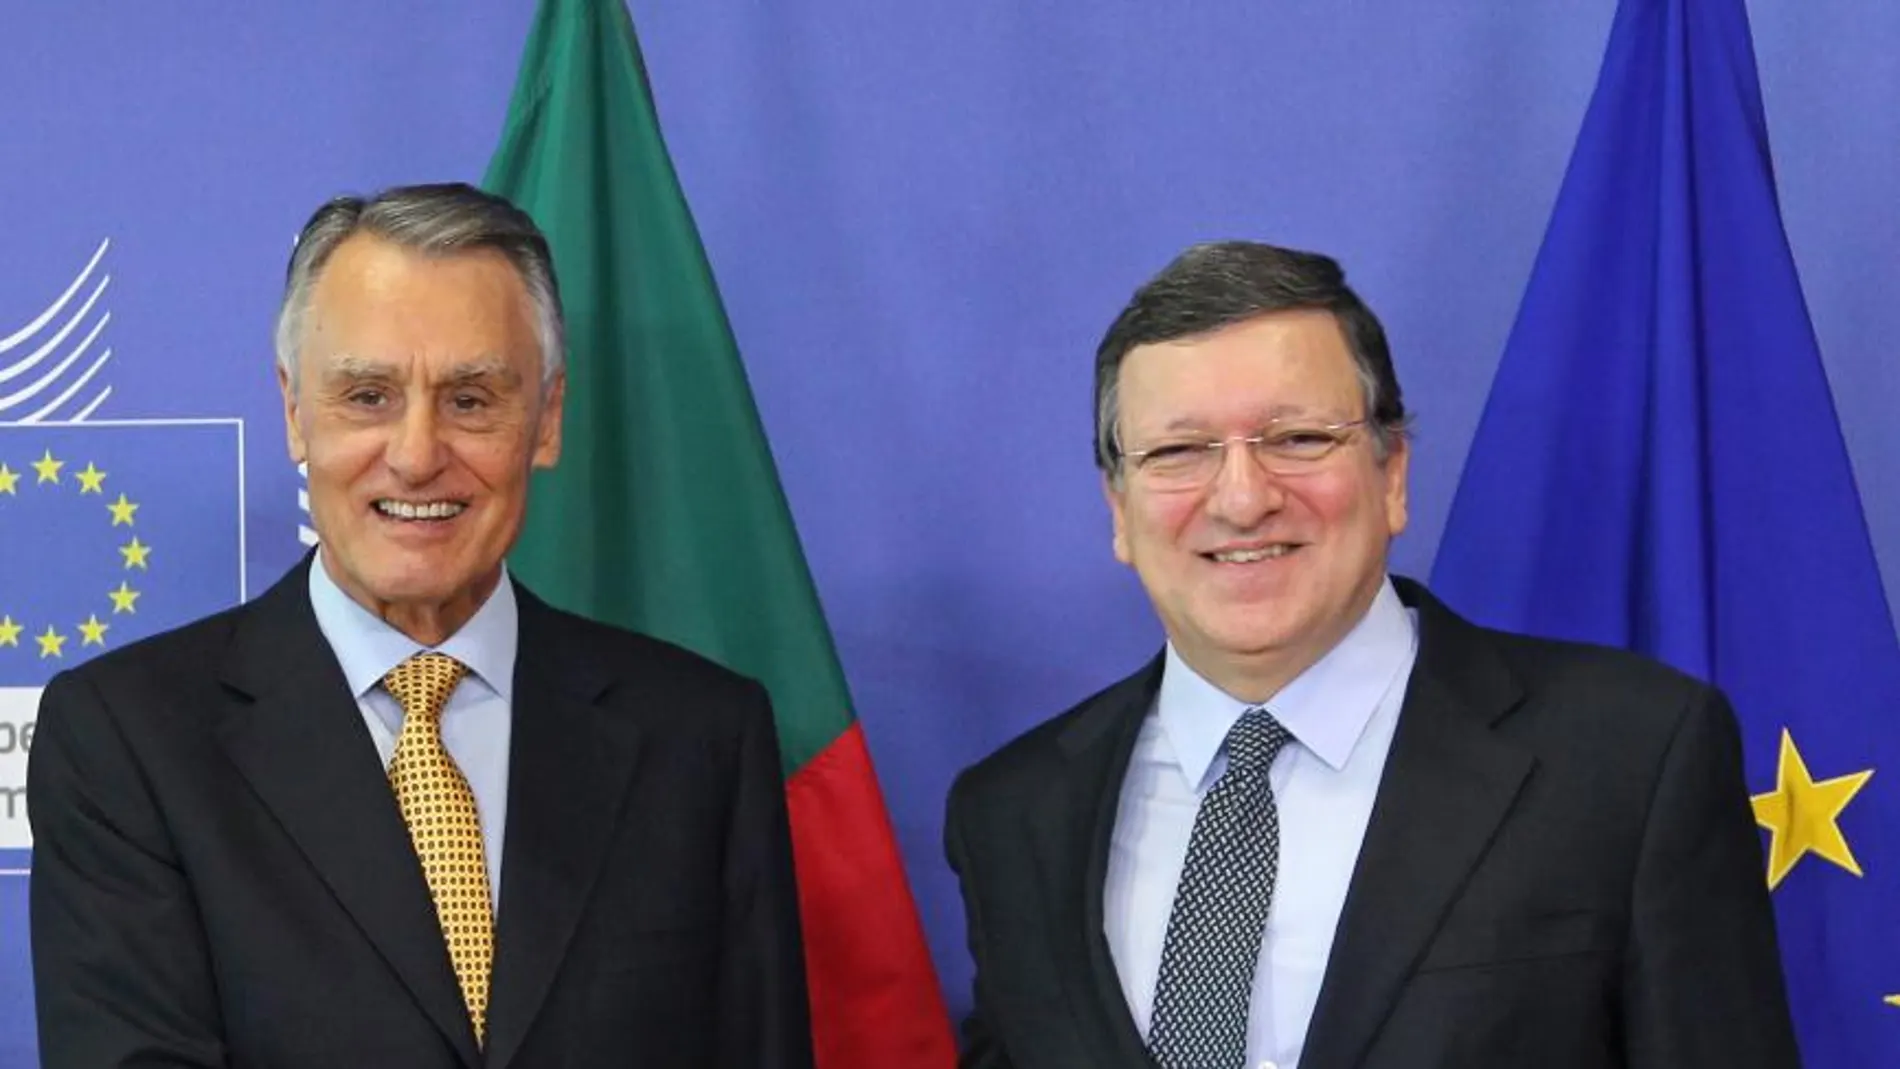 El presidente de la Comisión europea, Jose Manuel Barroso, saluda al presidente de Portugal Anibal Antonio Cavaco Silva.